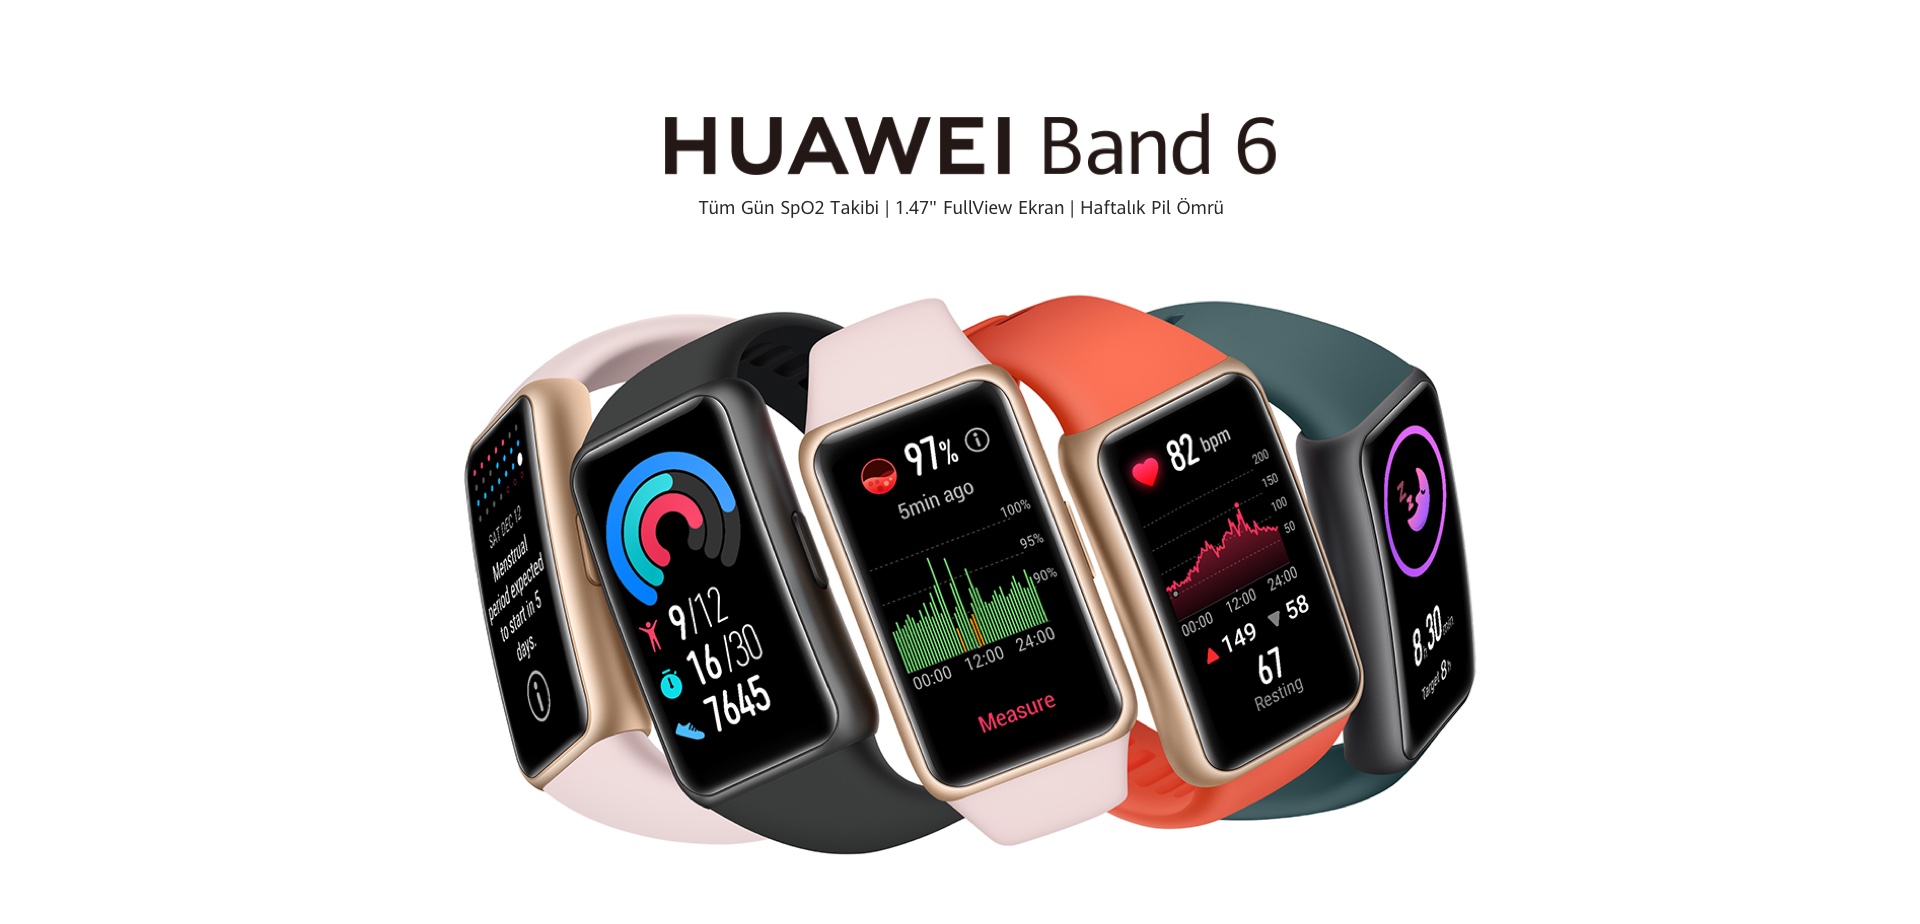 Huawei Band 6 Akıllı Saat Siyah Bilekteki Yeni Band HUAWEI Band 6, 1.47 inç AMOLED FullView ekrana, %148 daha geniş2 görüntülenebilir alana ve %64 düşük çerçeveli ekran-gövde oranına sahiptir. Bunu 282 ÜFE'ye sahip yüksek çözünürlüklü 194x368 ekranla birleştirdiğinizde gerçekten etkileyici bir banda bakıyor olacaksınız.